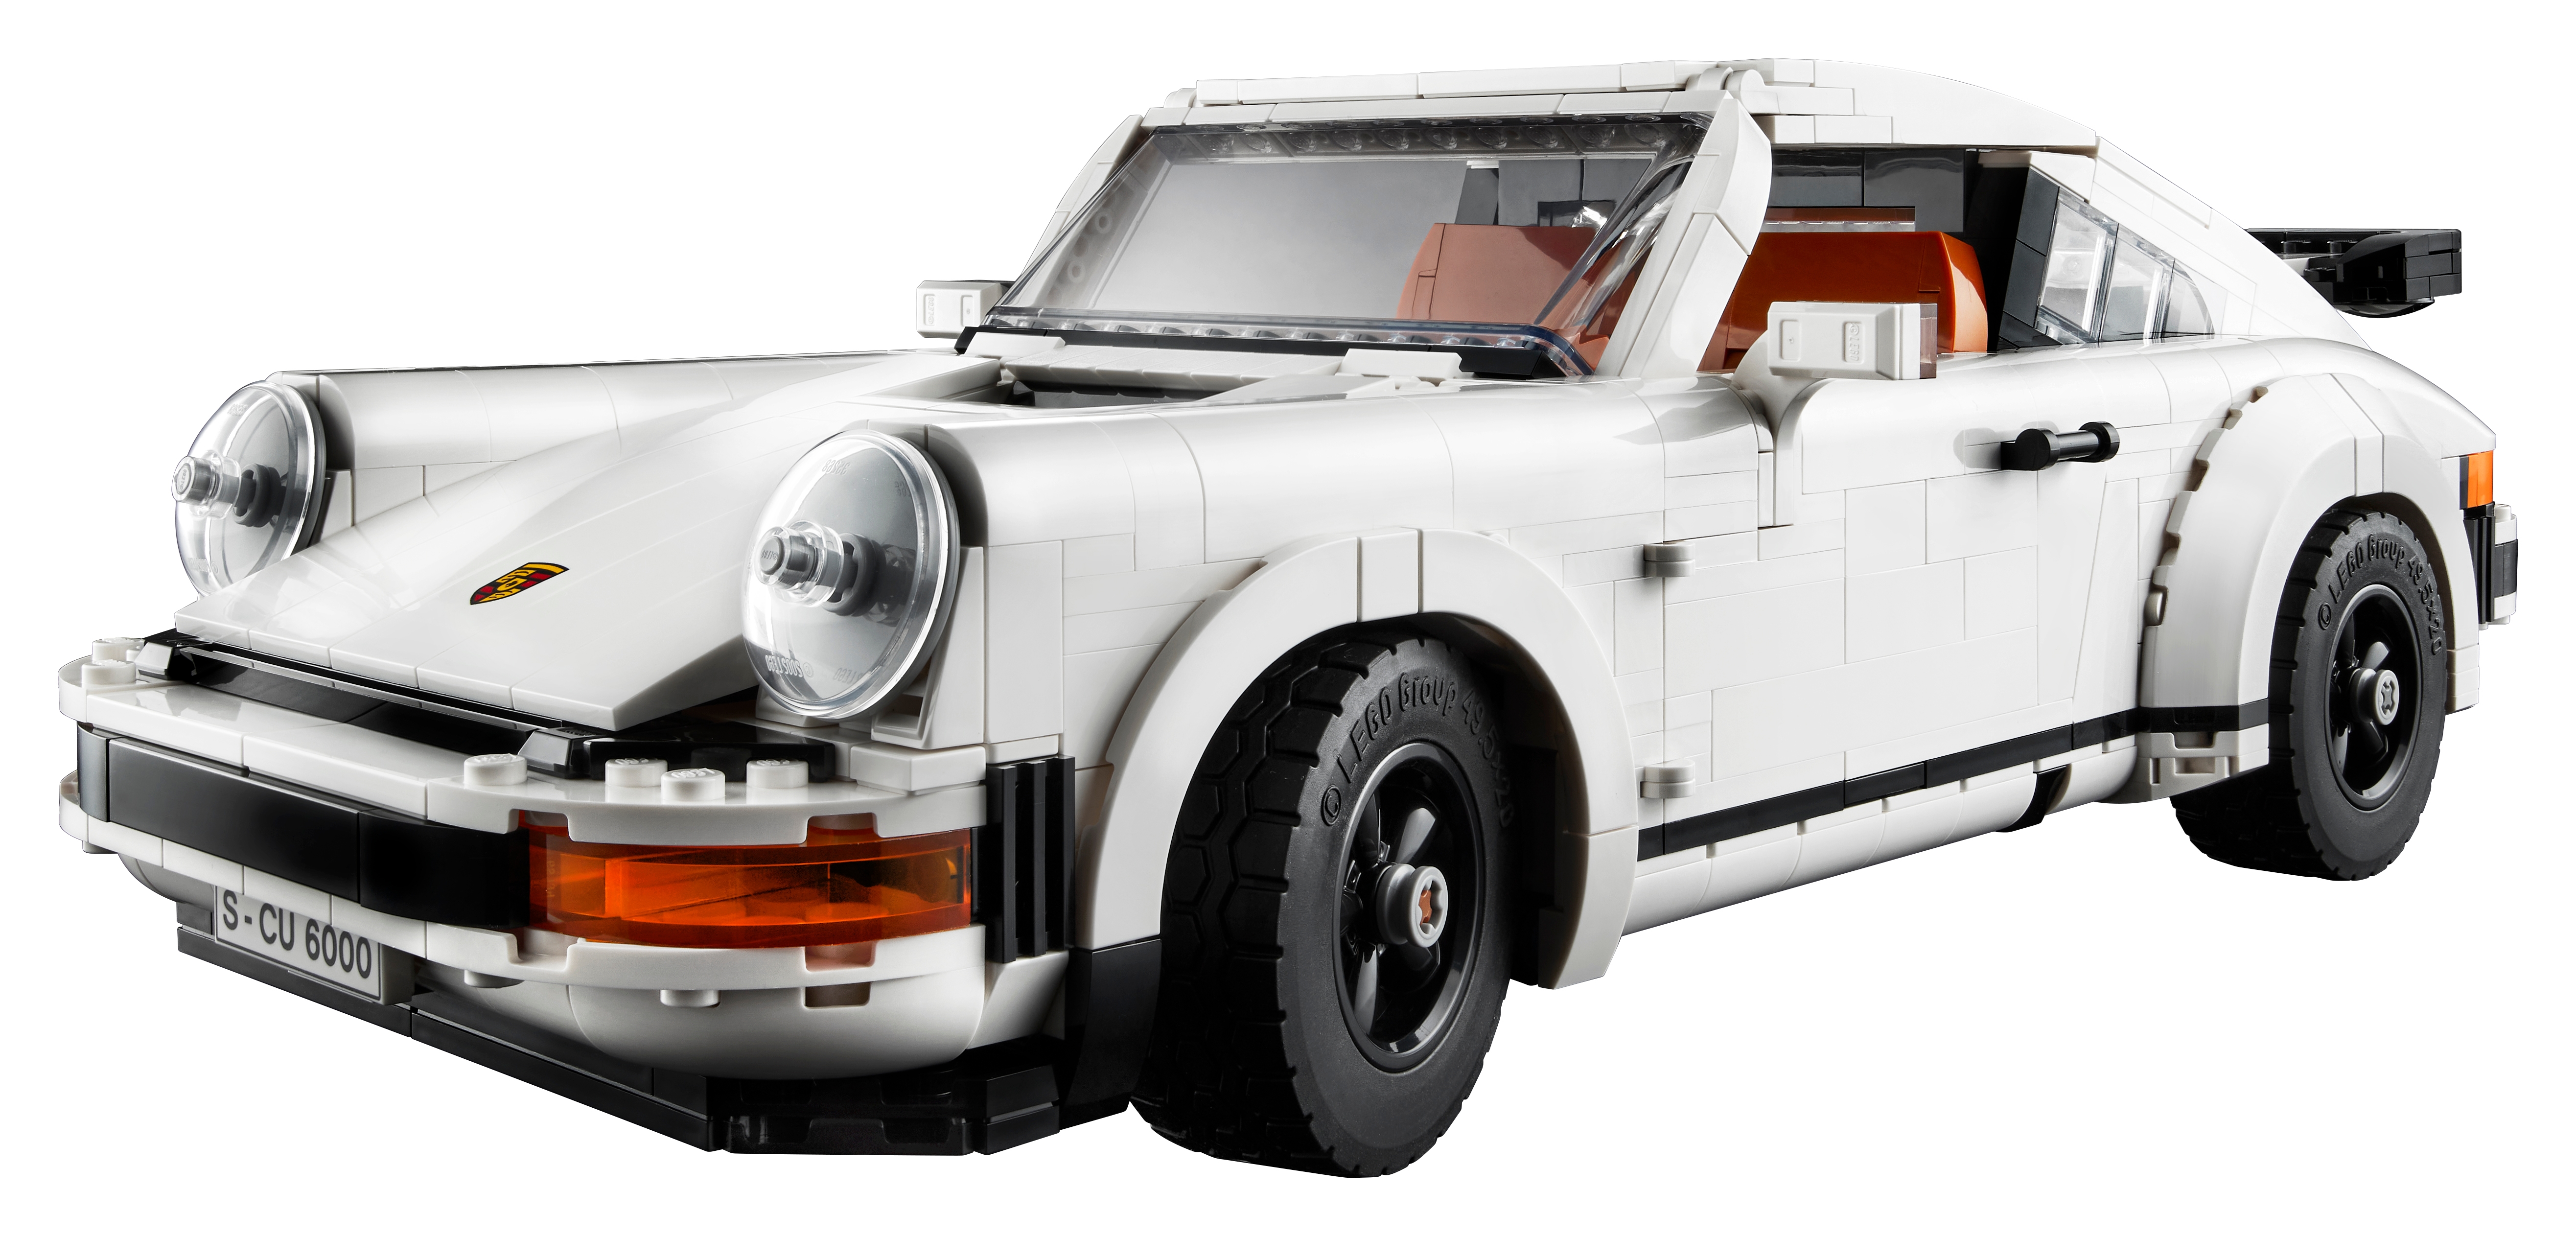 Spy Photos: Lego Porsche 911 Prototype Kit Debuts at German Toy